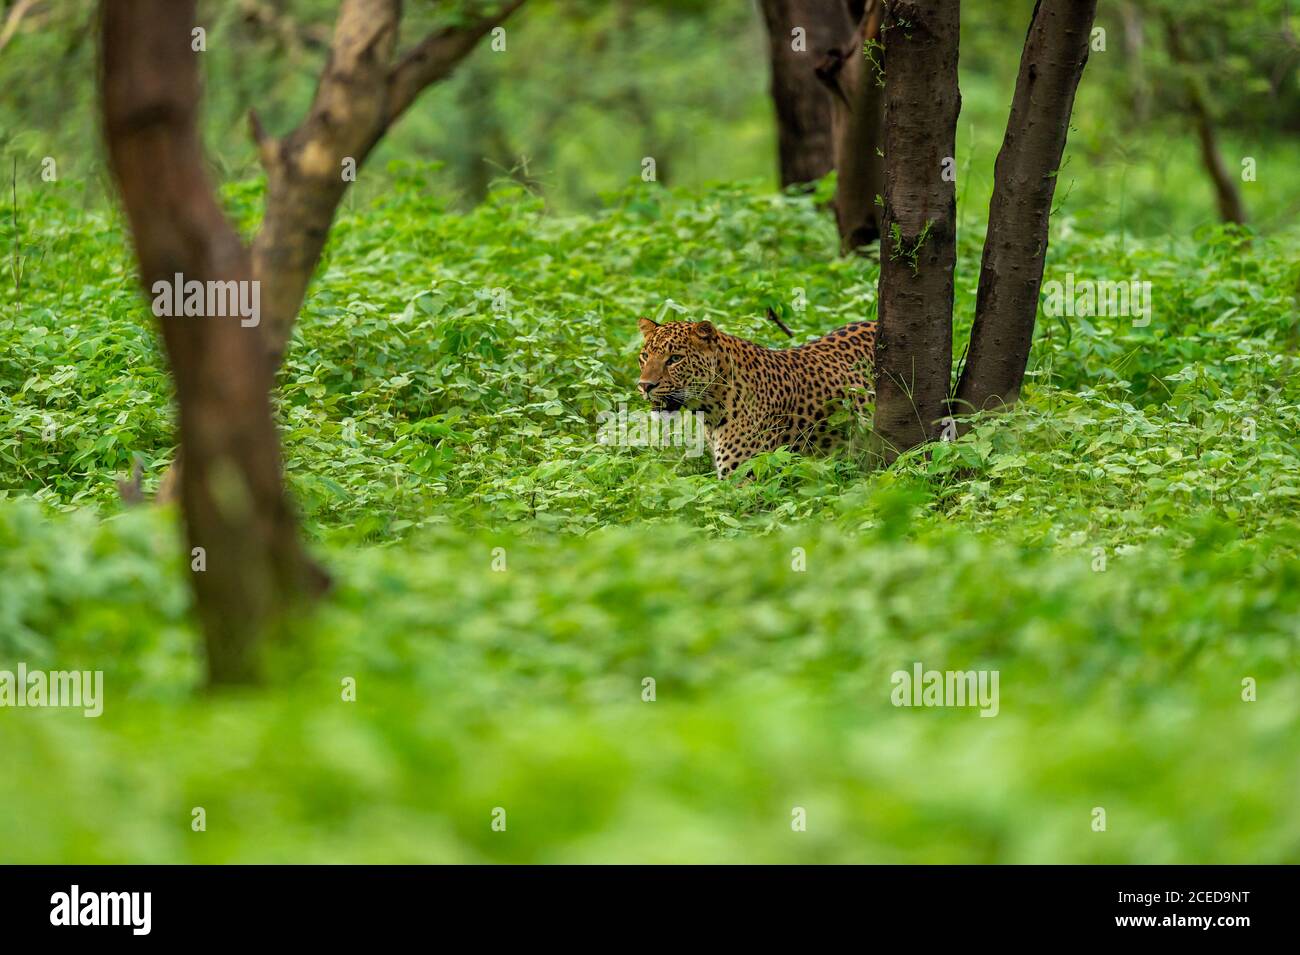 leopardo maschile selvaggio o pantera che cammina su sfondo verde naturale in monsone stagione safari al leopardo jhalana o riserva forestale jaipur rajasthan india Foto Stock